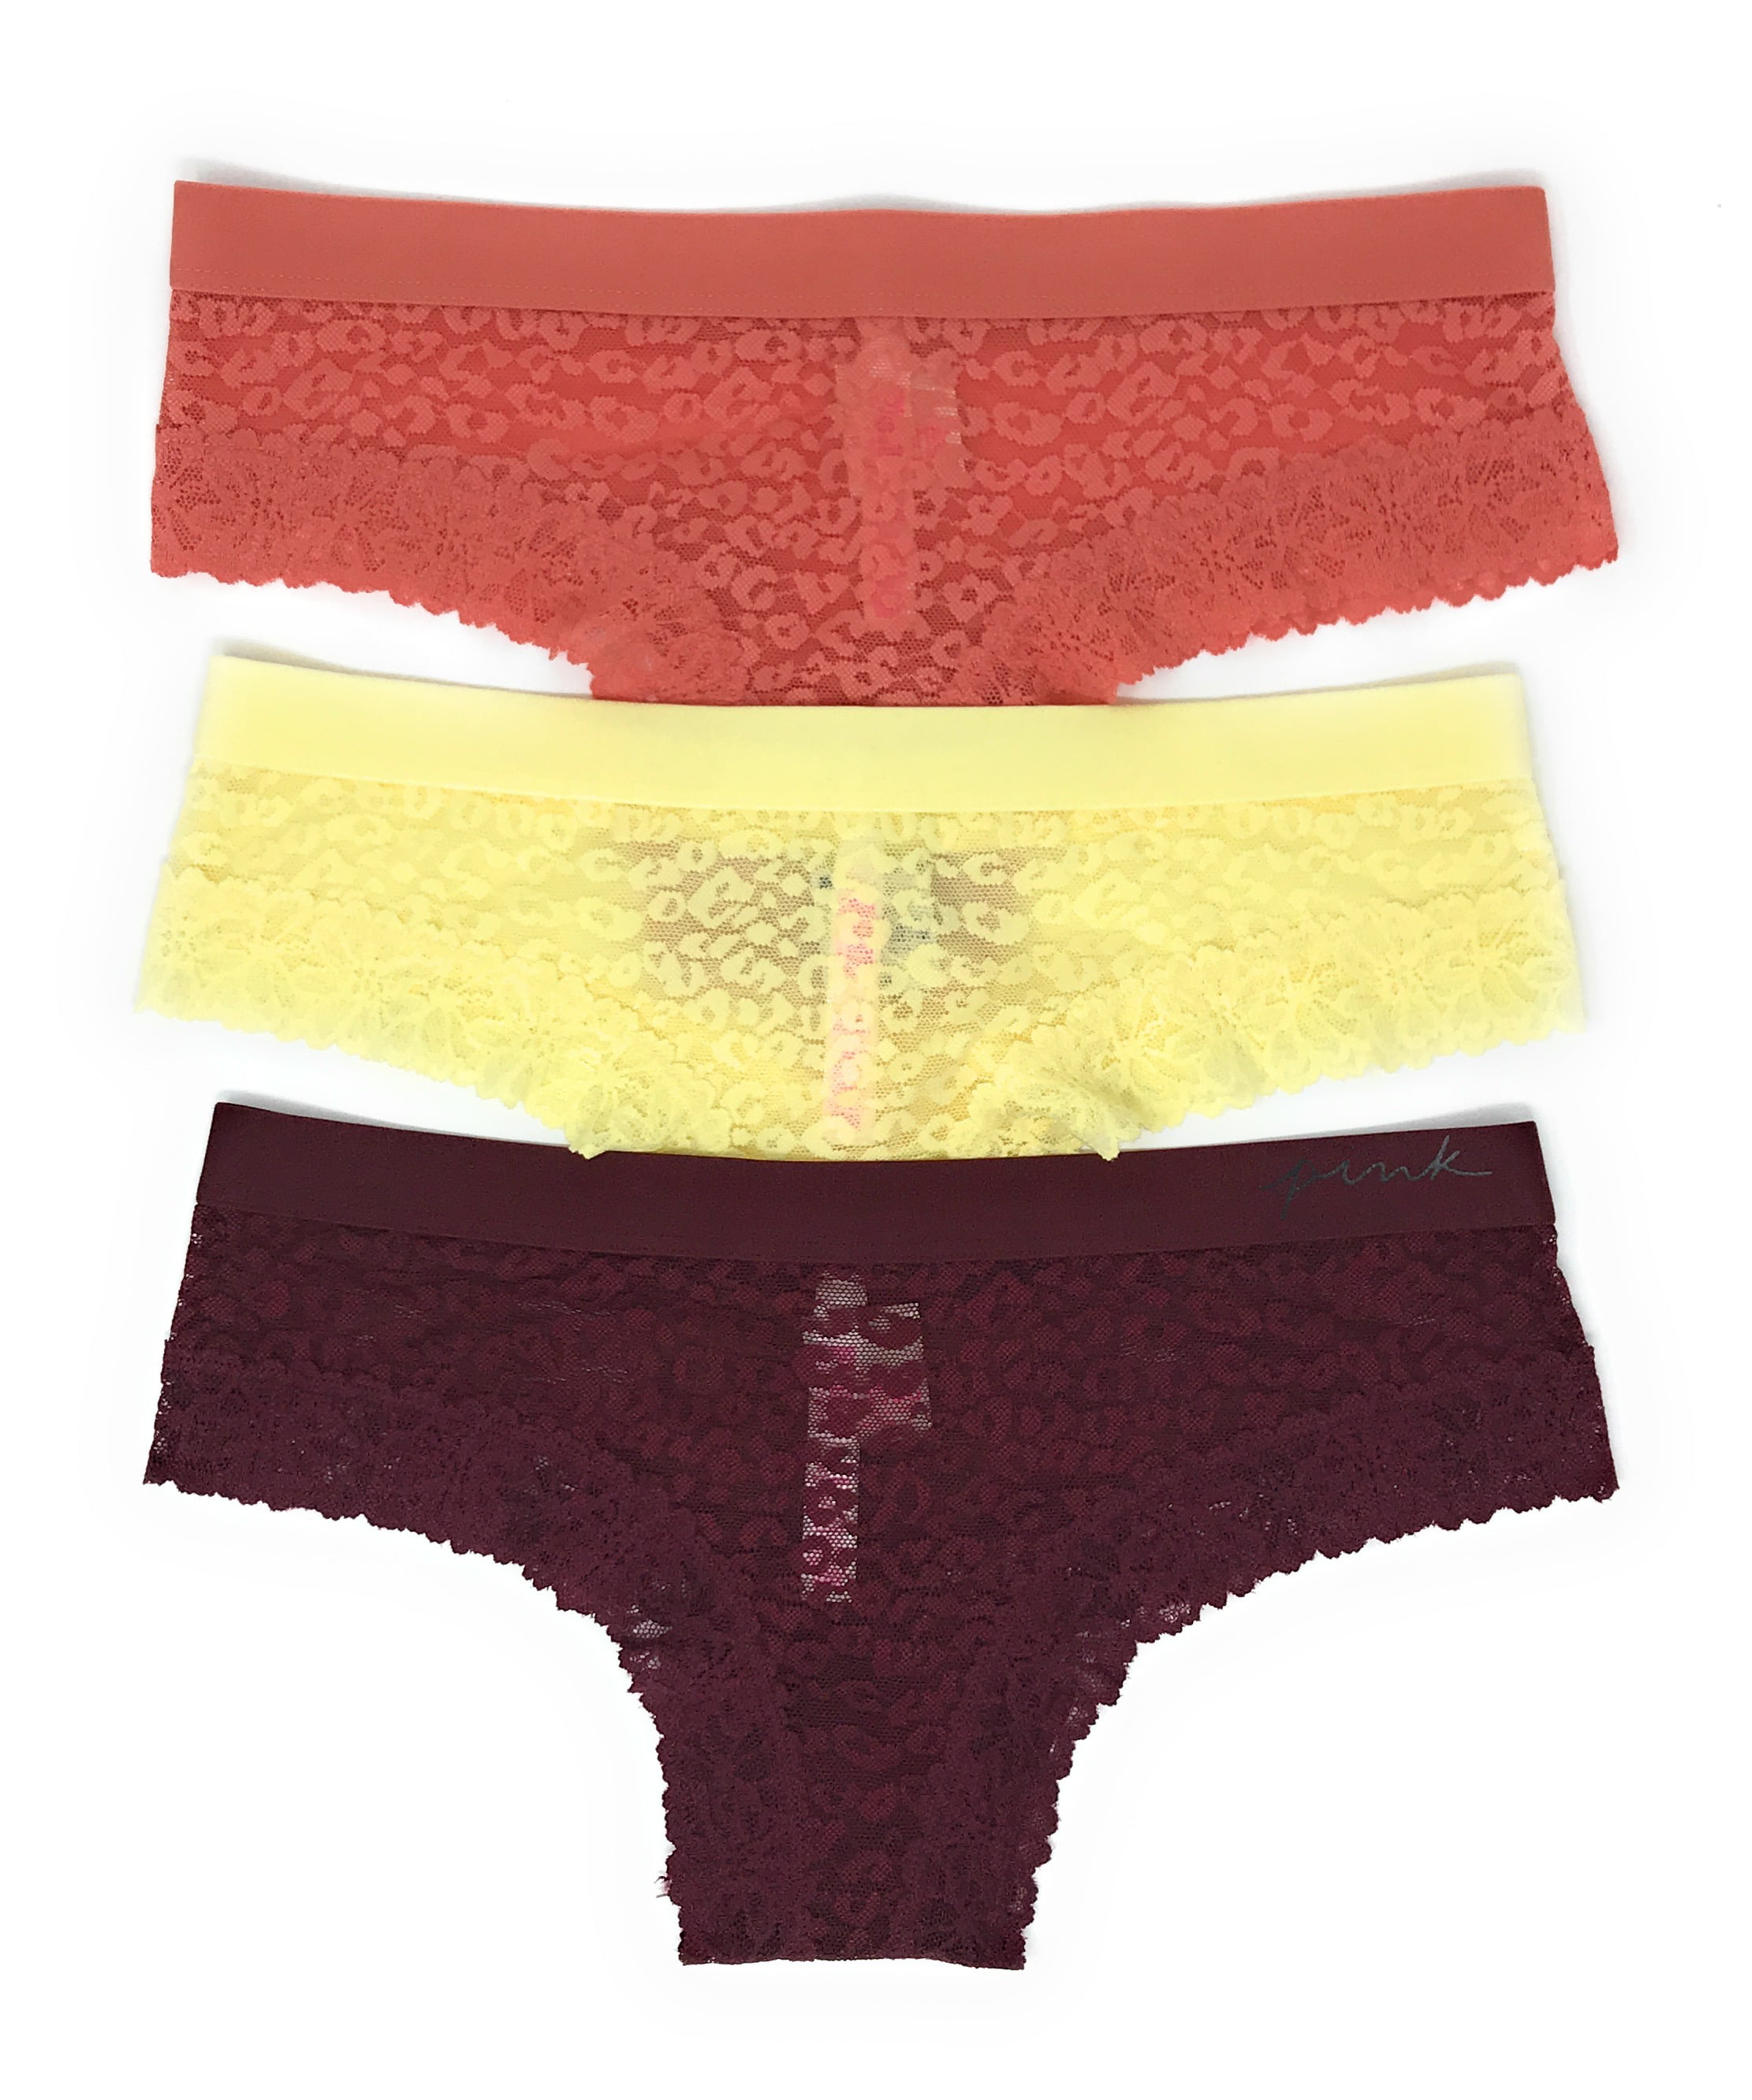 Buy Acacia Panty - Order Panties online 1123599400 - Victoria's Secret US